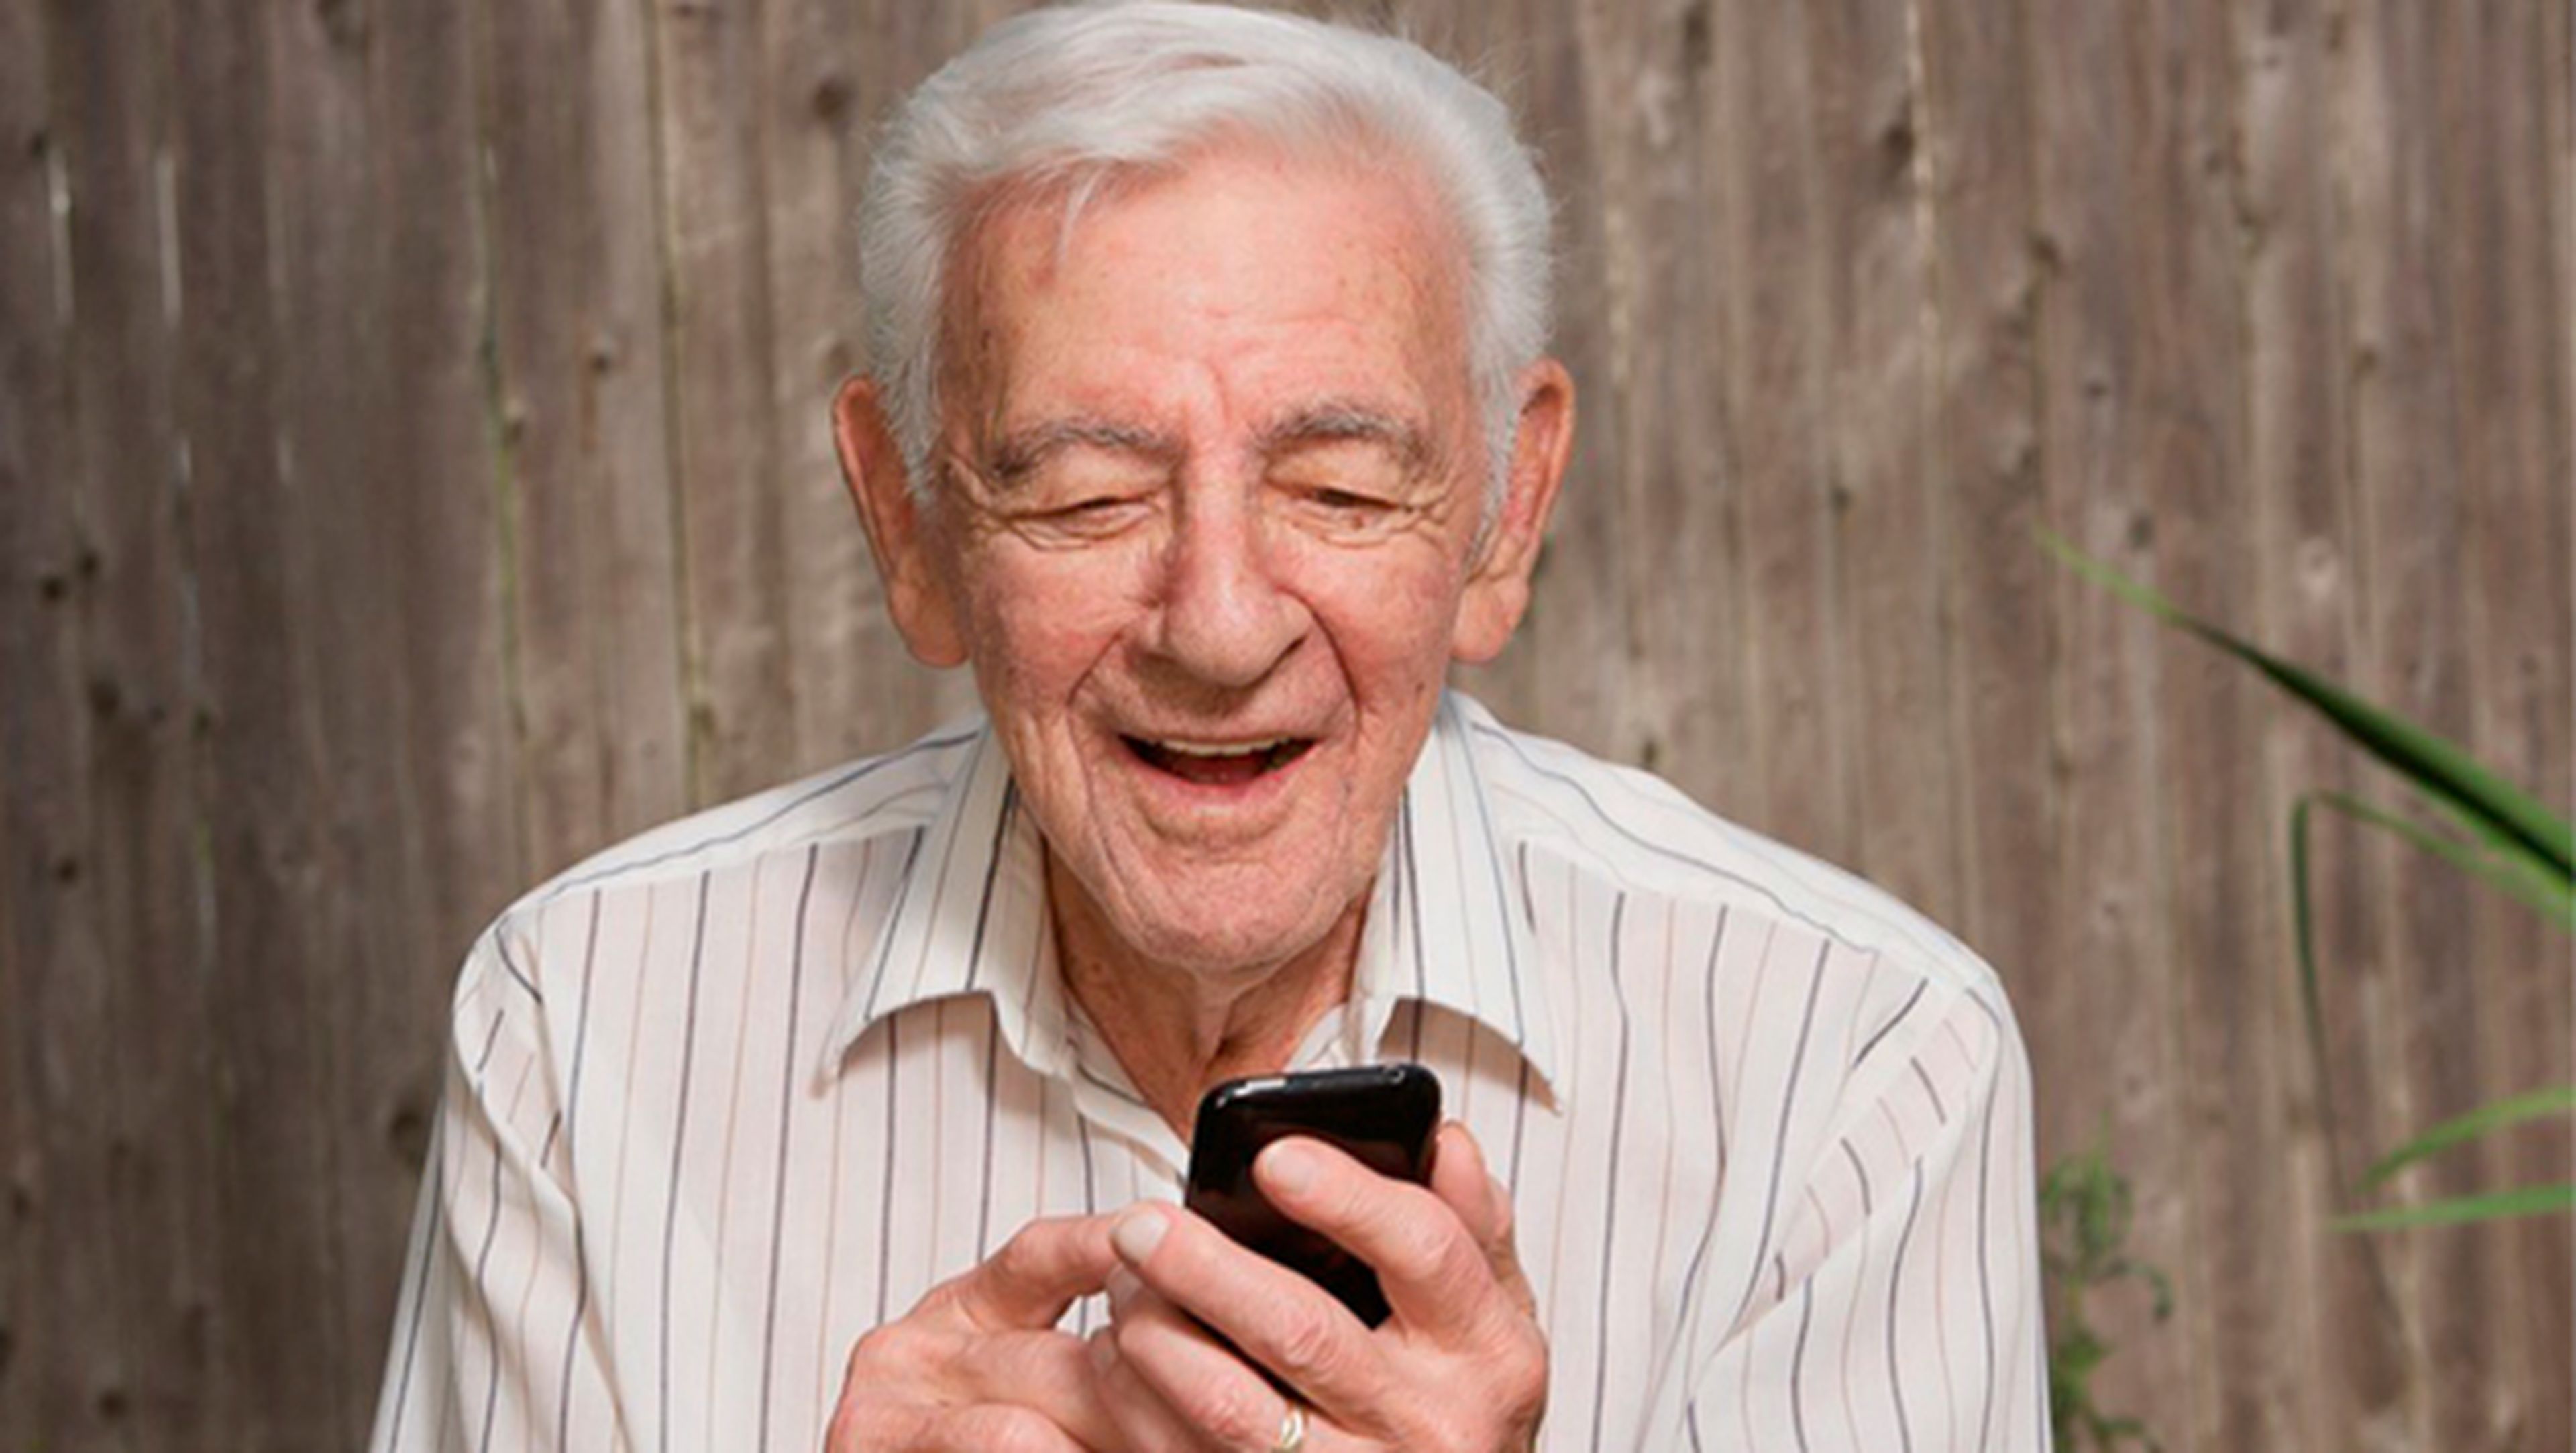 WhatsApp para personas mayores: guía fácil de uso